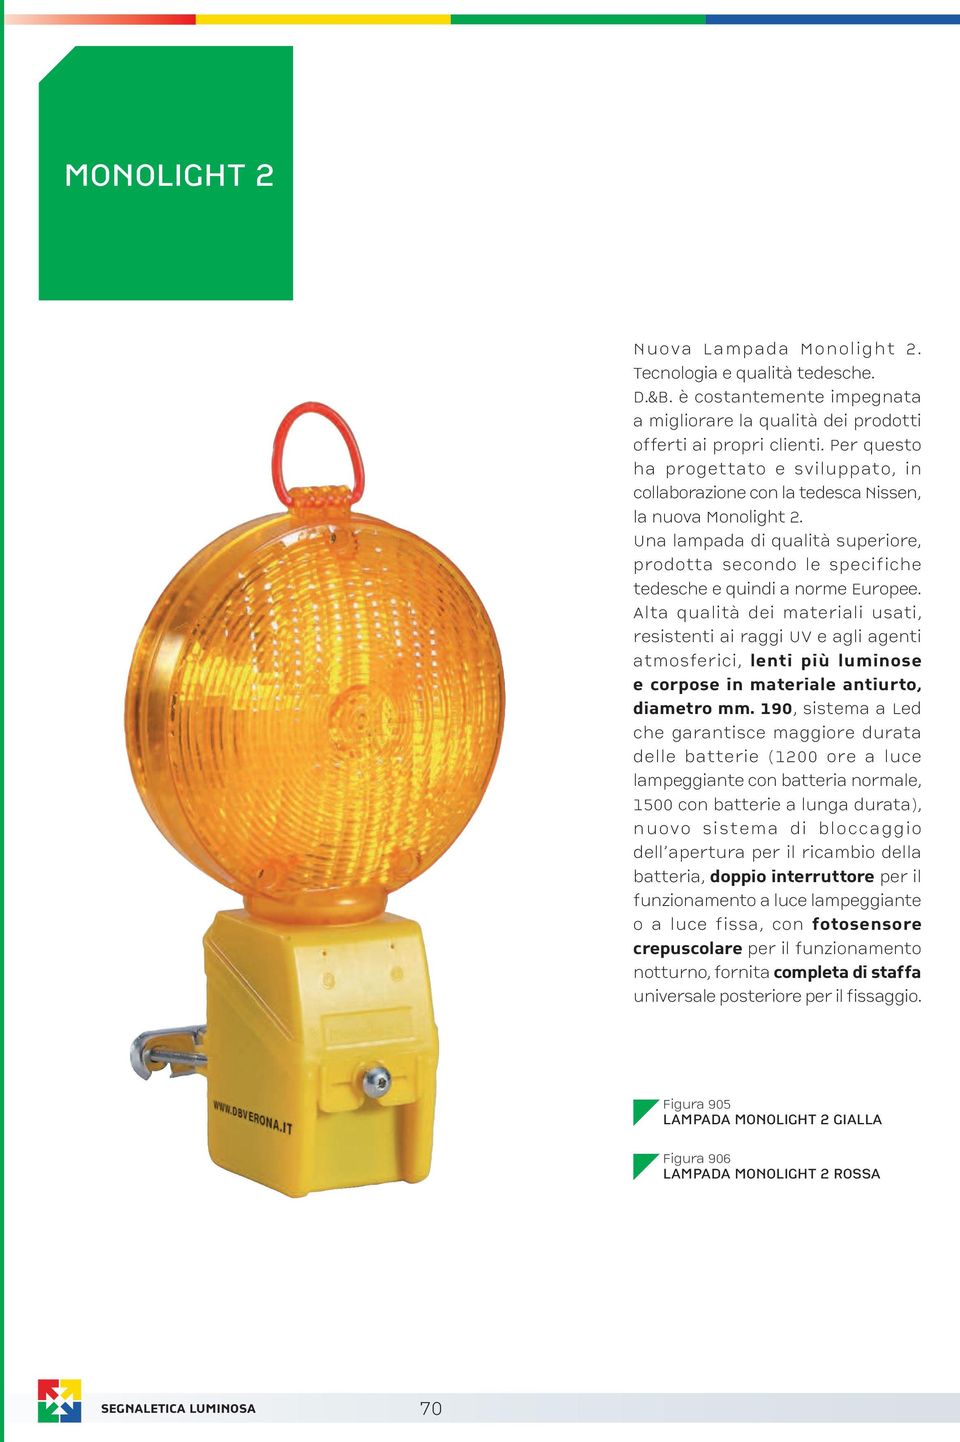 Una lampada di qualità superiore, prodotta secondo le specifiche tedesche e quindi a norme Europee.